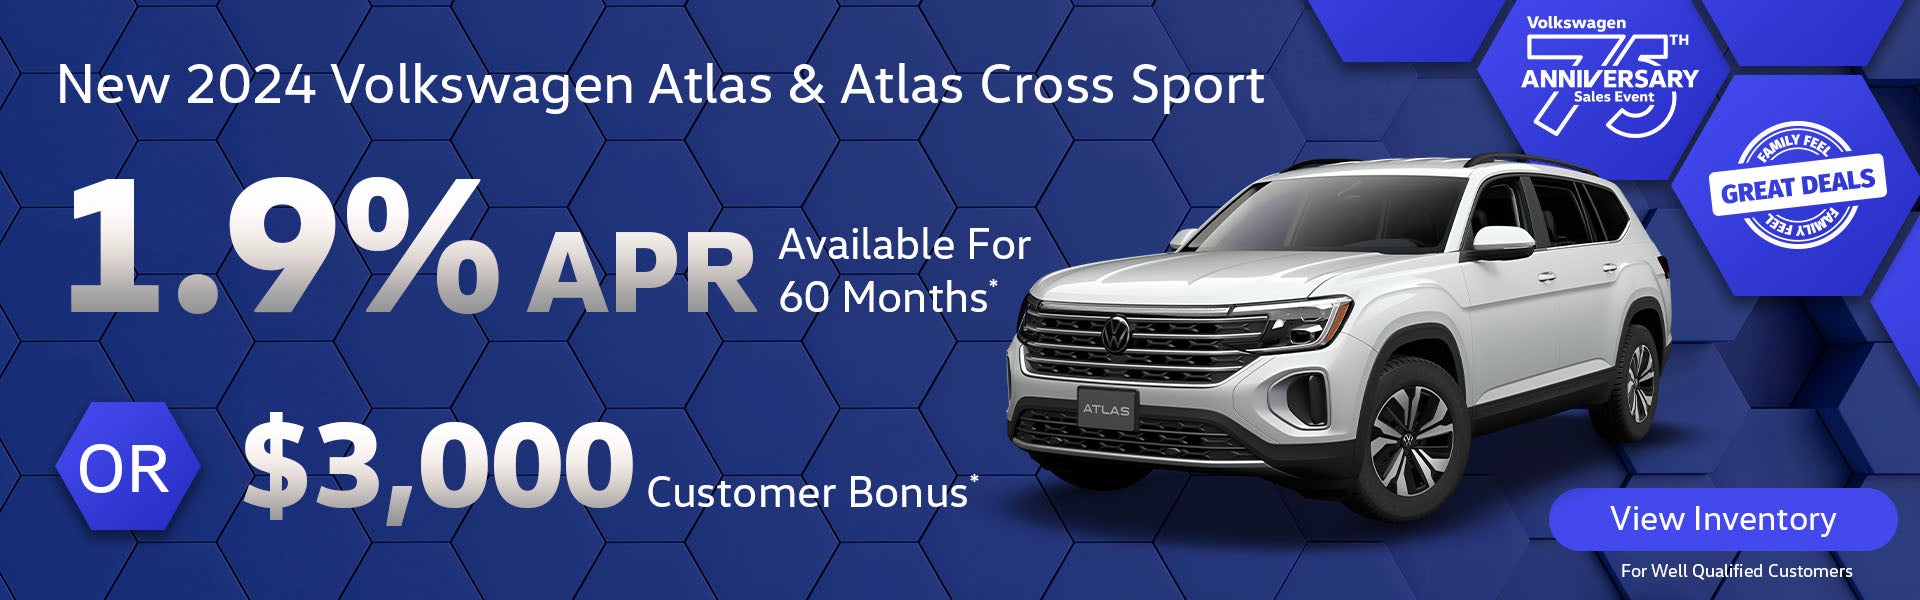 New 2024 Volkswagen Atlas & Atlas Cross Sport 